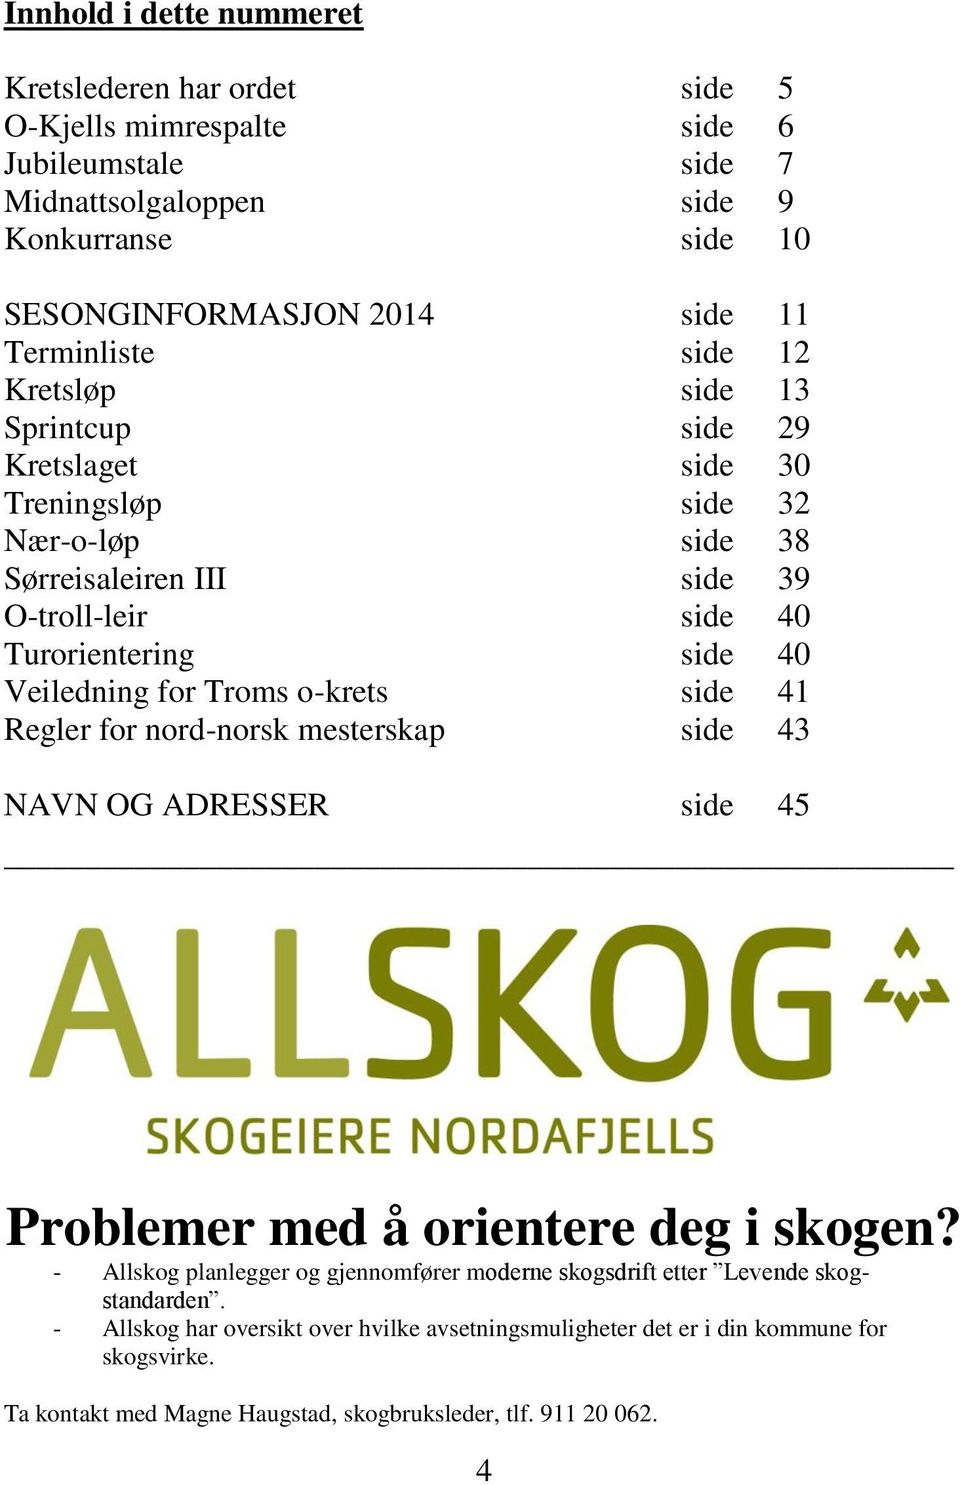 Veiledning for Troms o-krets side 41 Regler for nord-norsk mesterskap side 43 NAVN OG ADRESSER side 45 Problemer med å orientere deg i skogen?